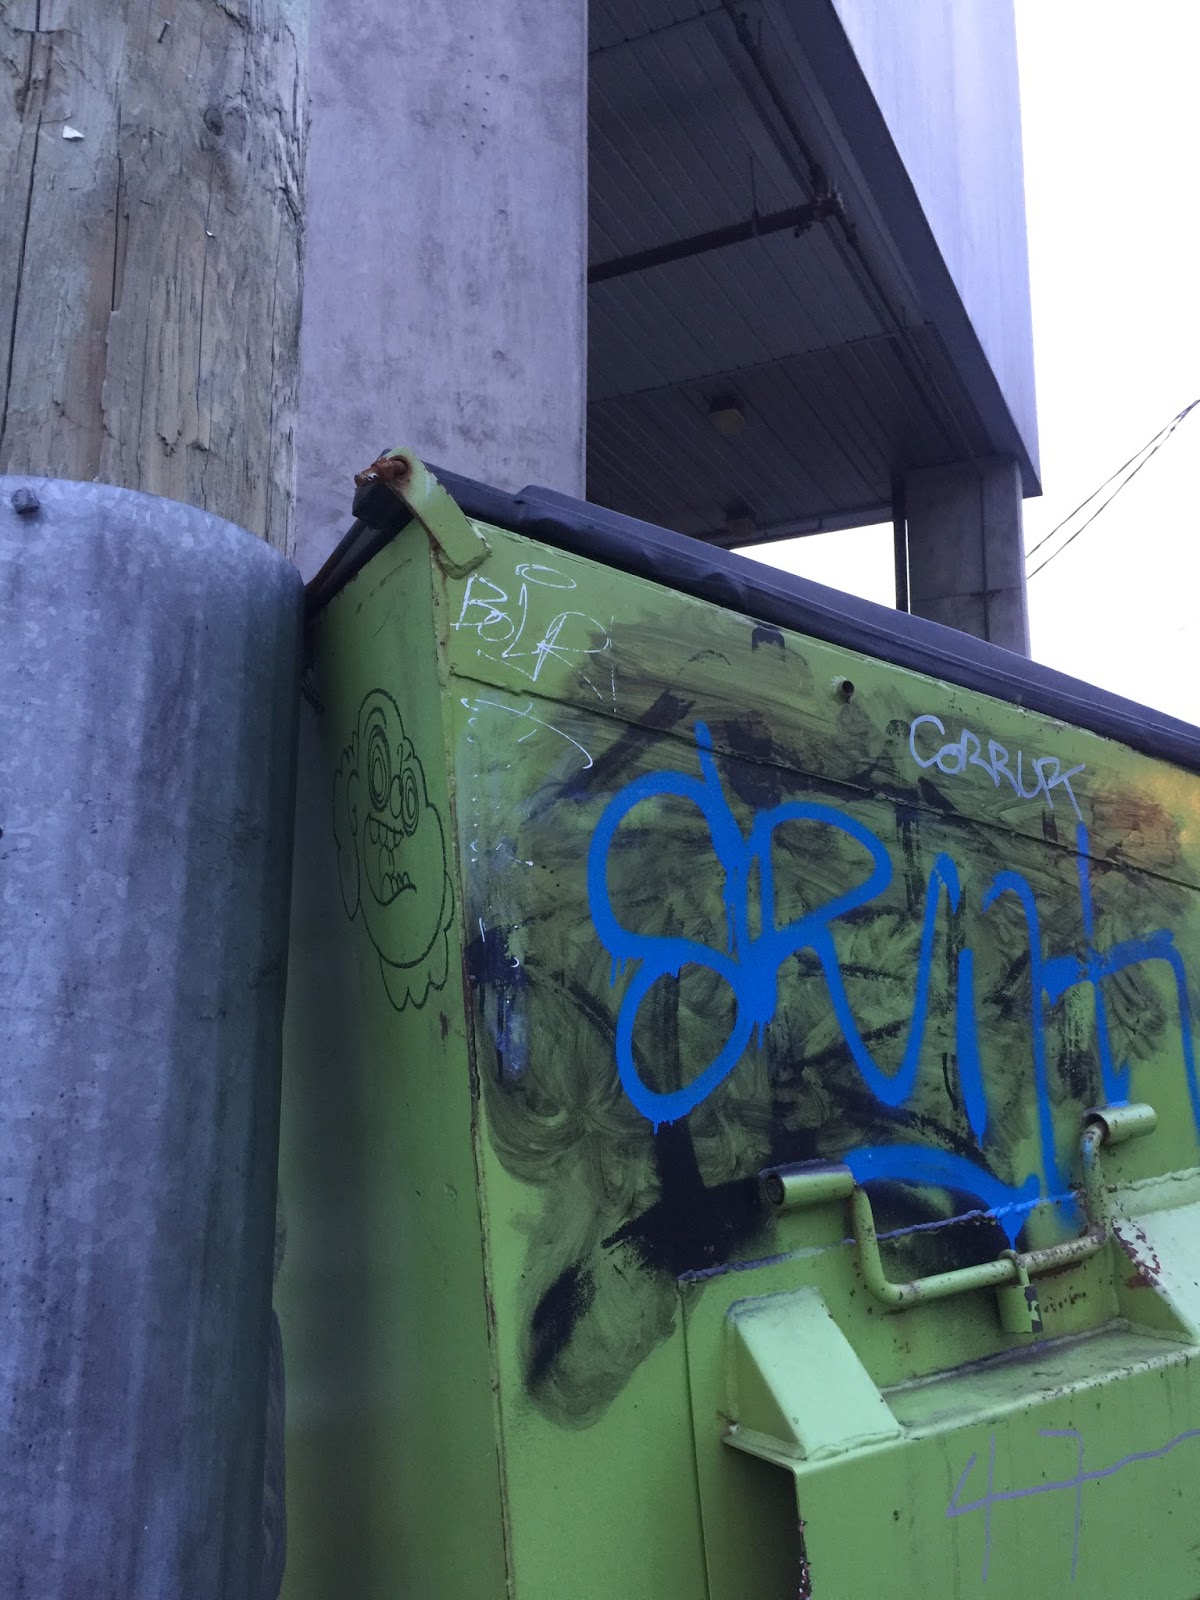 Back-Alley Wanderings in Urban Vancouver